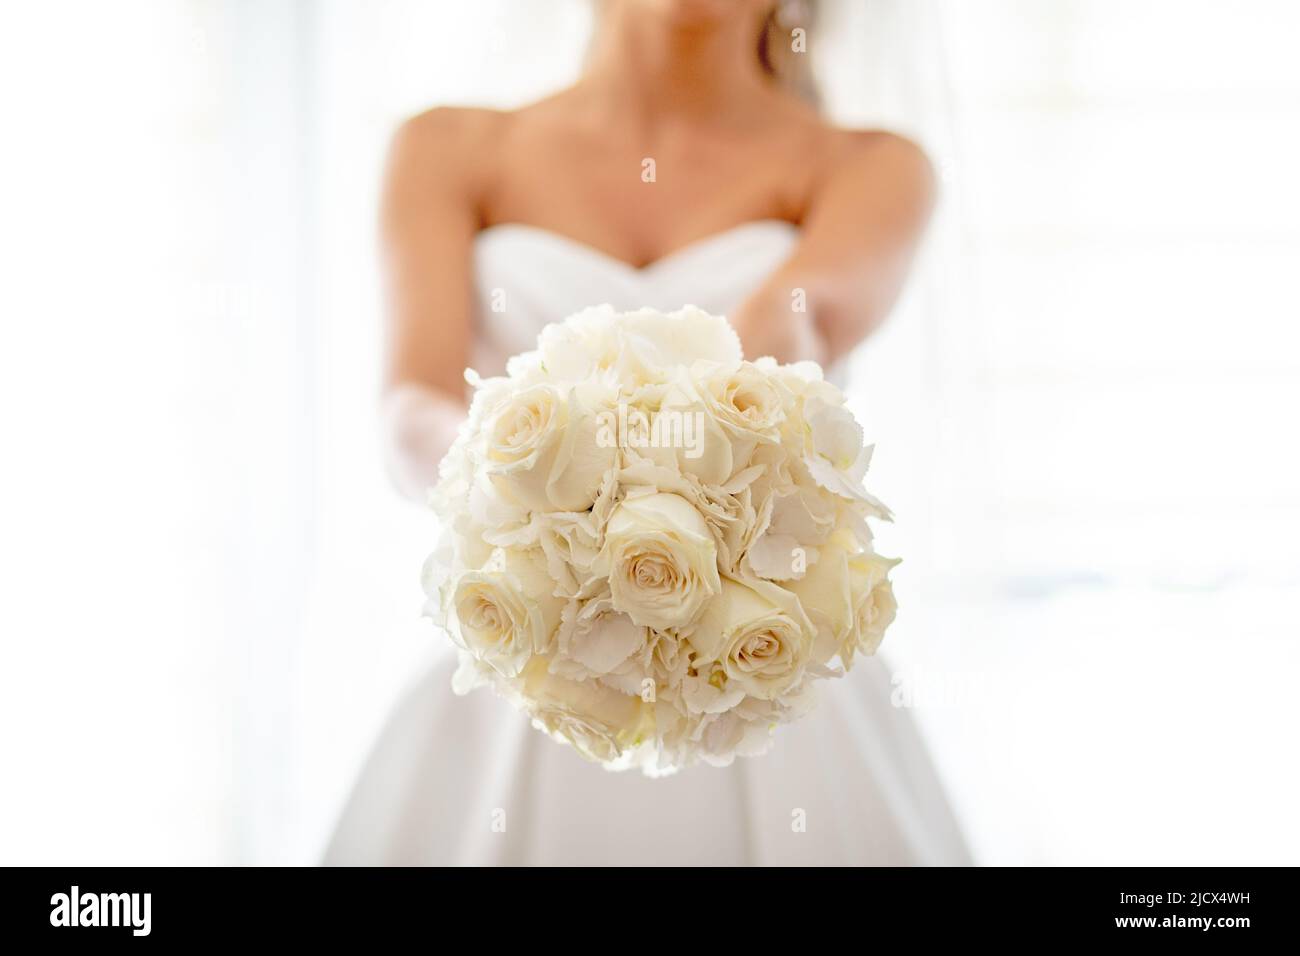 Aujourd'hui est le jour du mariage! Mariée avec bouquet de roses jaune clair dans les mains Banque D'Images